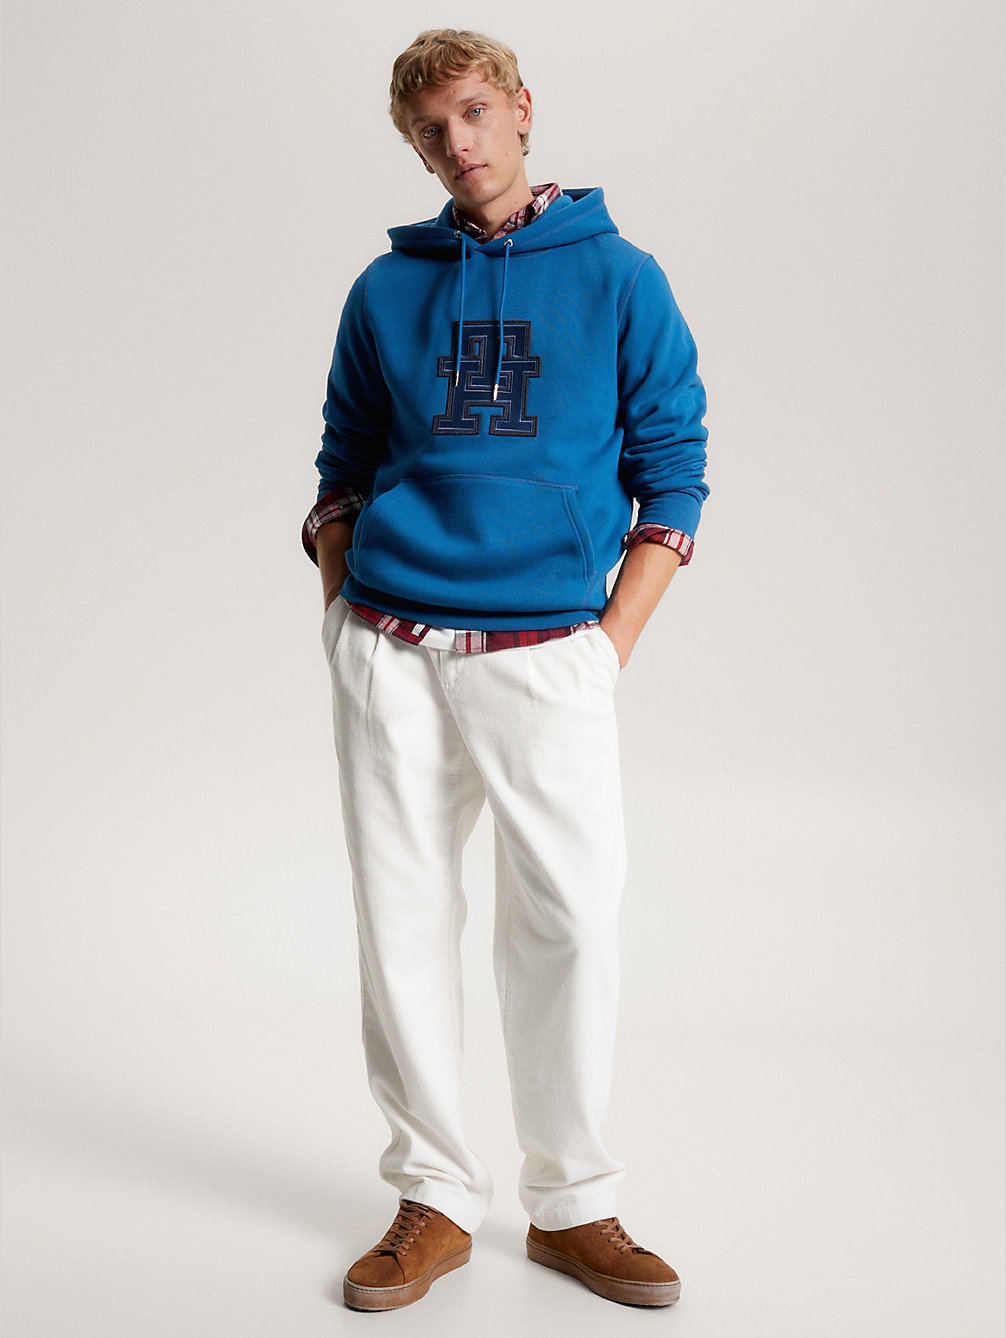 blue hoodie mit th-monogramm-applikation für herren - tommy hilfiger